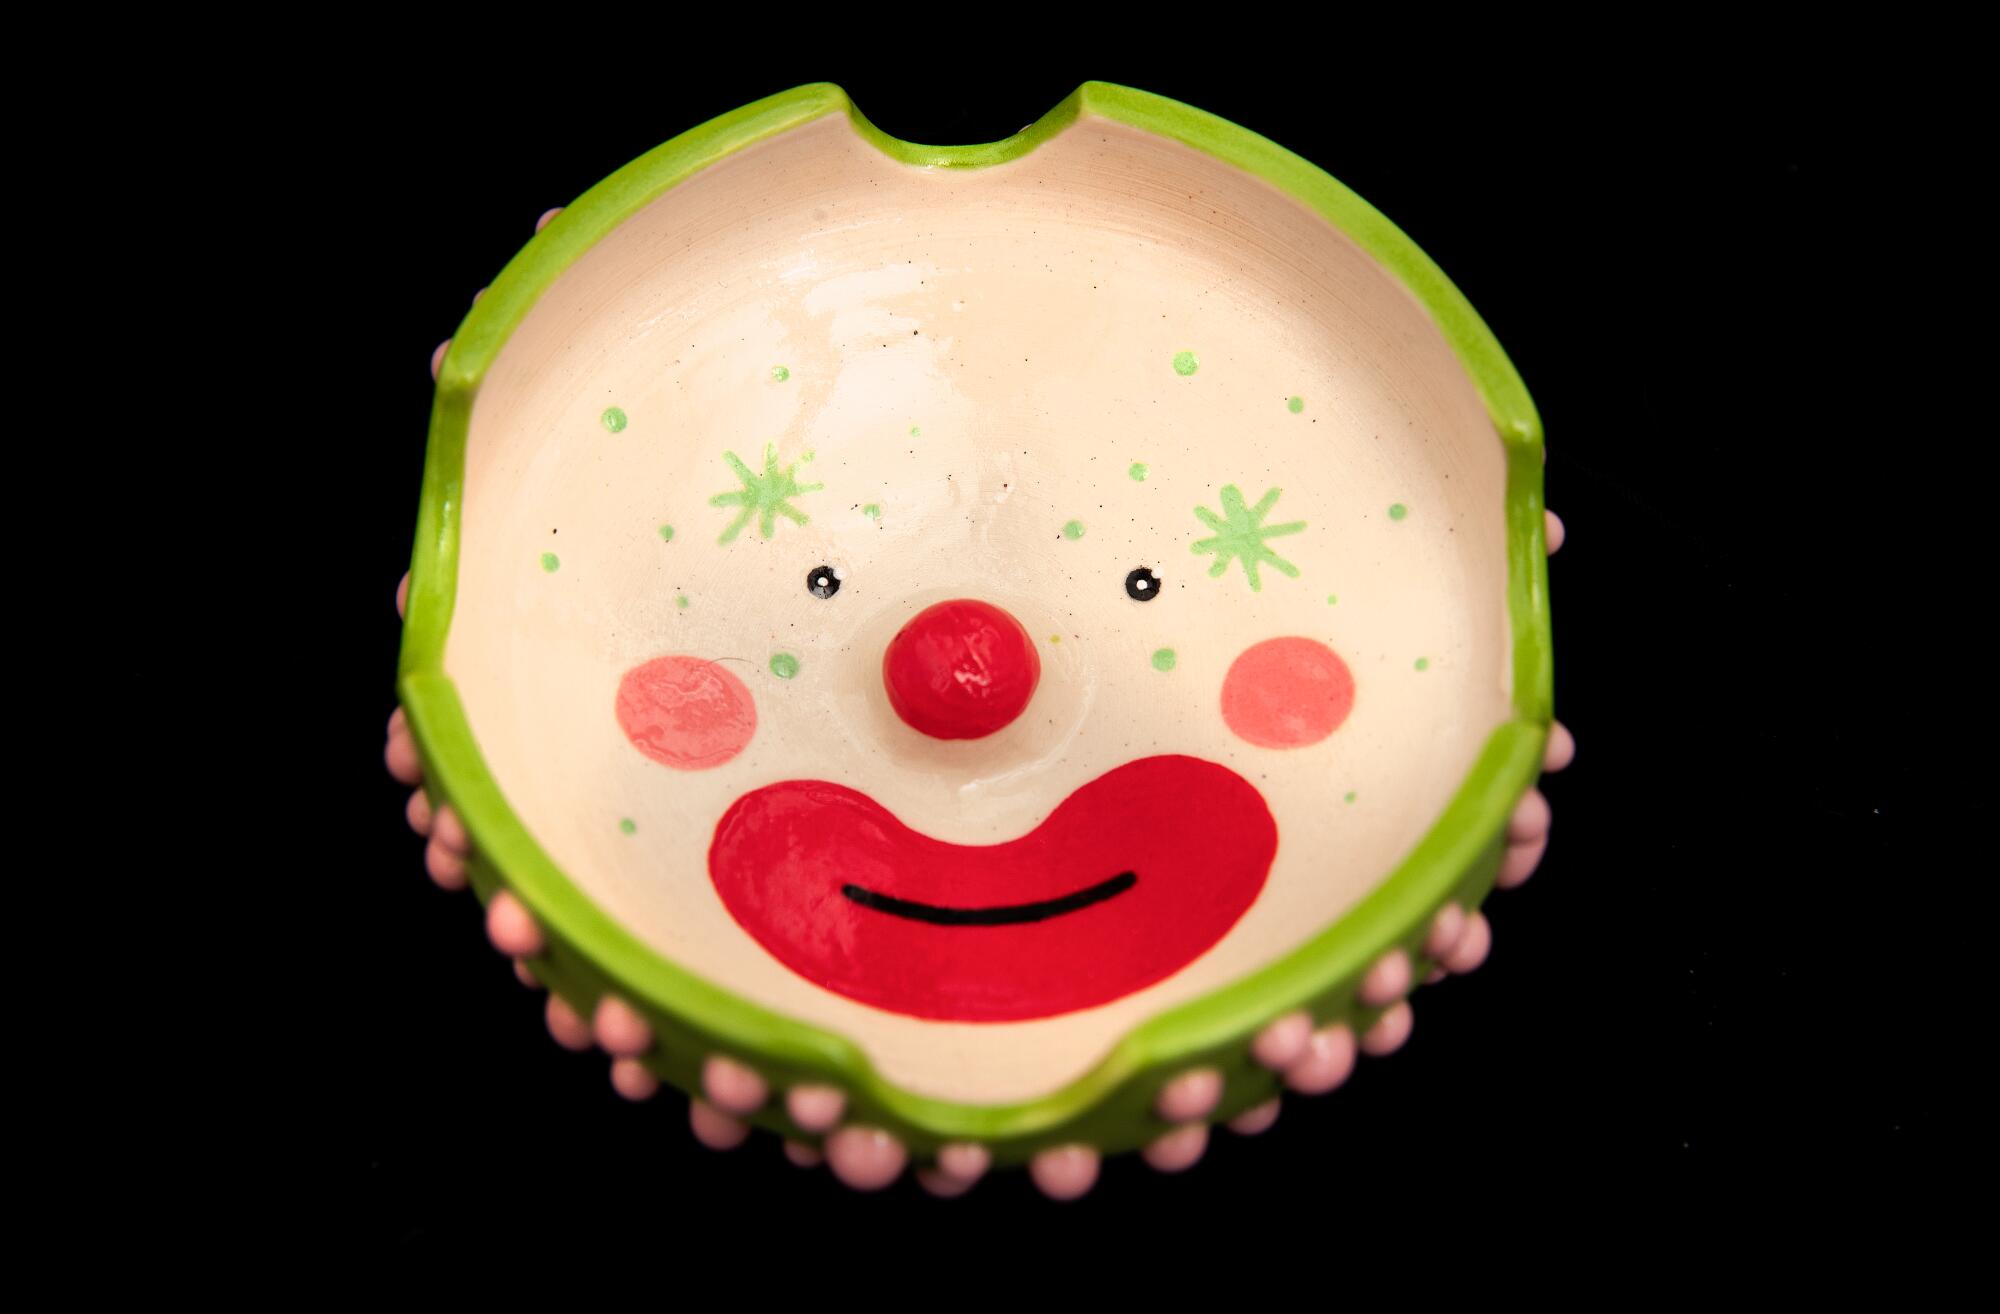 A ceramic clown ashtray.